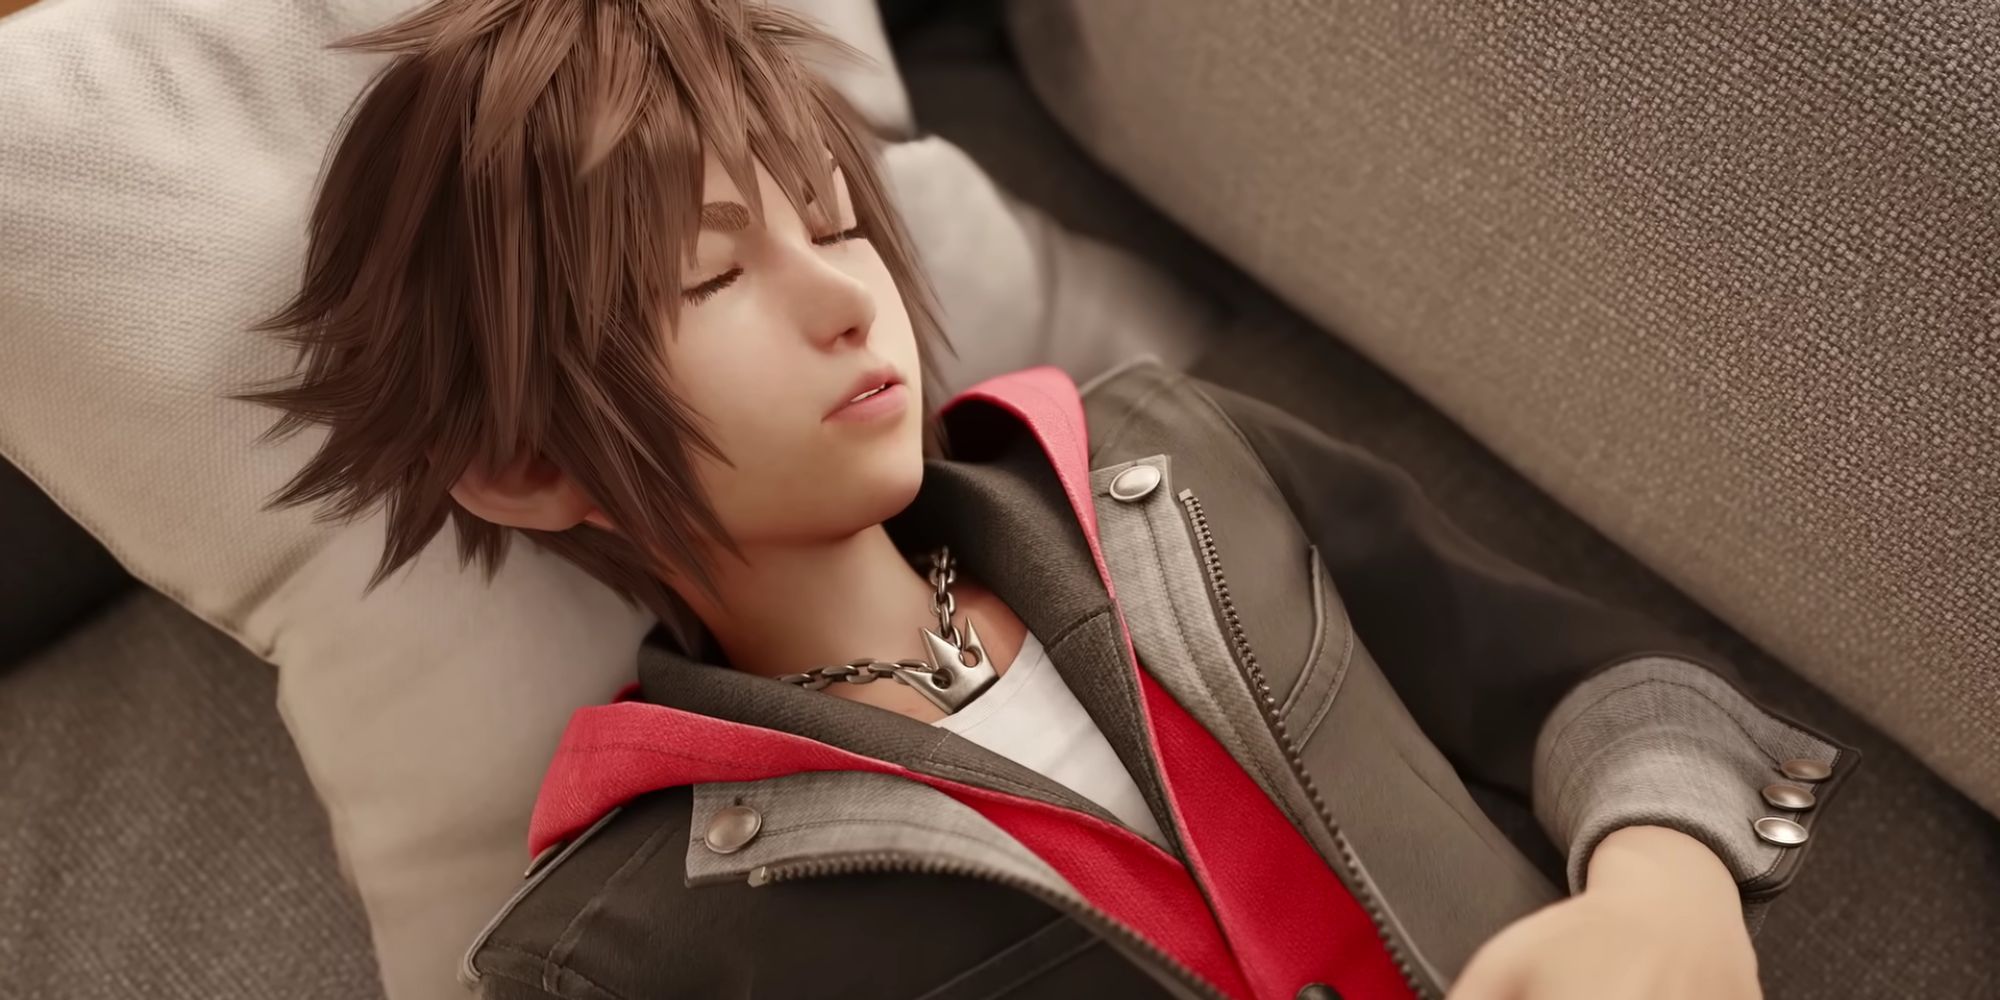 Sora sleeping in Kingdom Hearts 4.